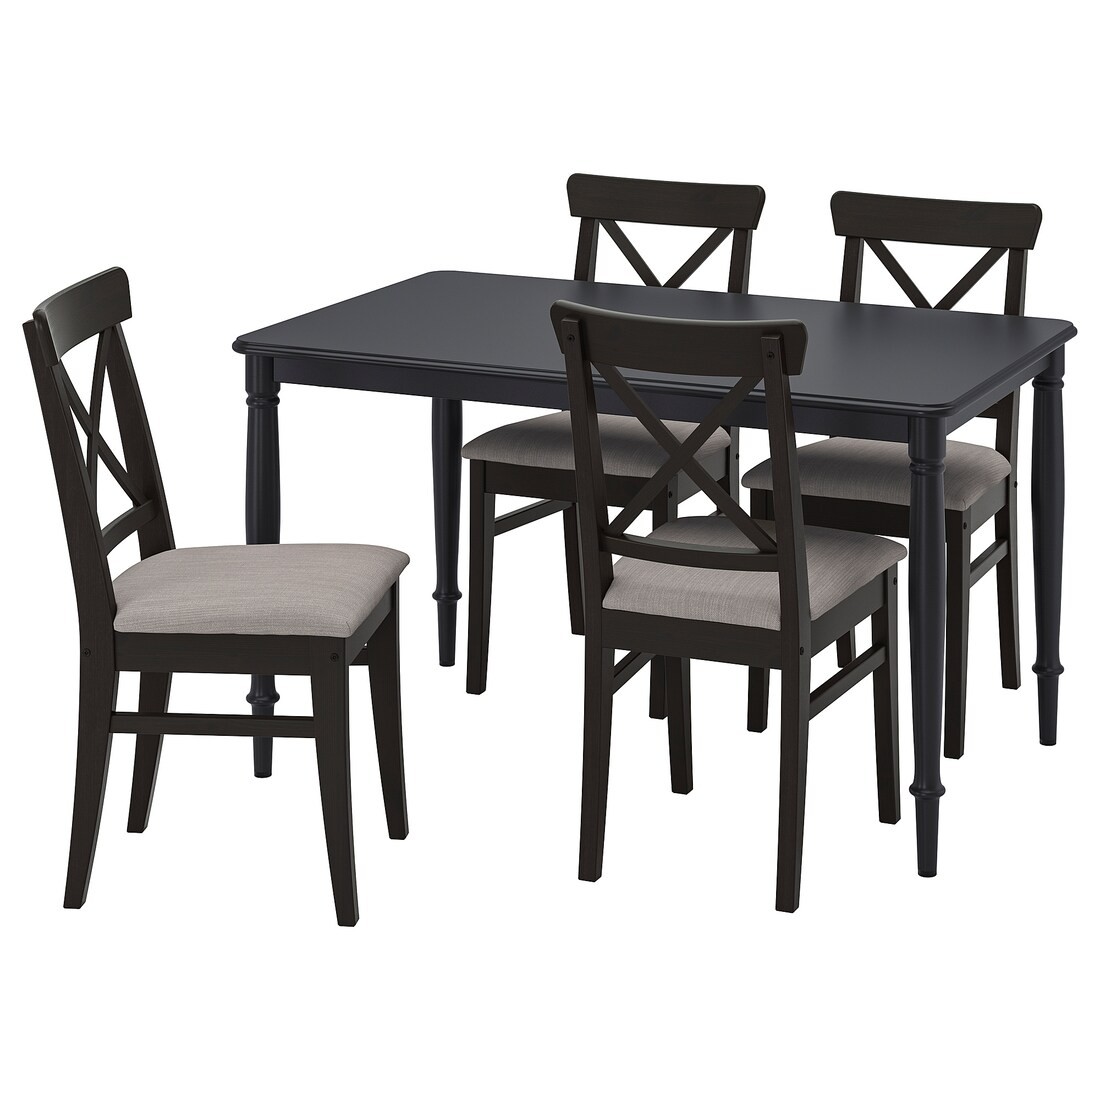 DANDERYD / INGOLF Стол и 4 стула, черный / Nolhaga серо-бежевый, 130 см